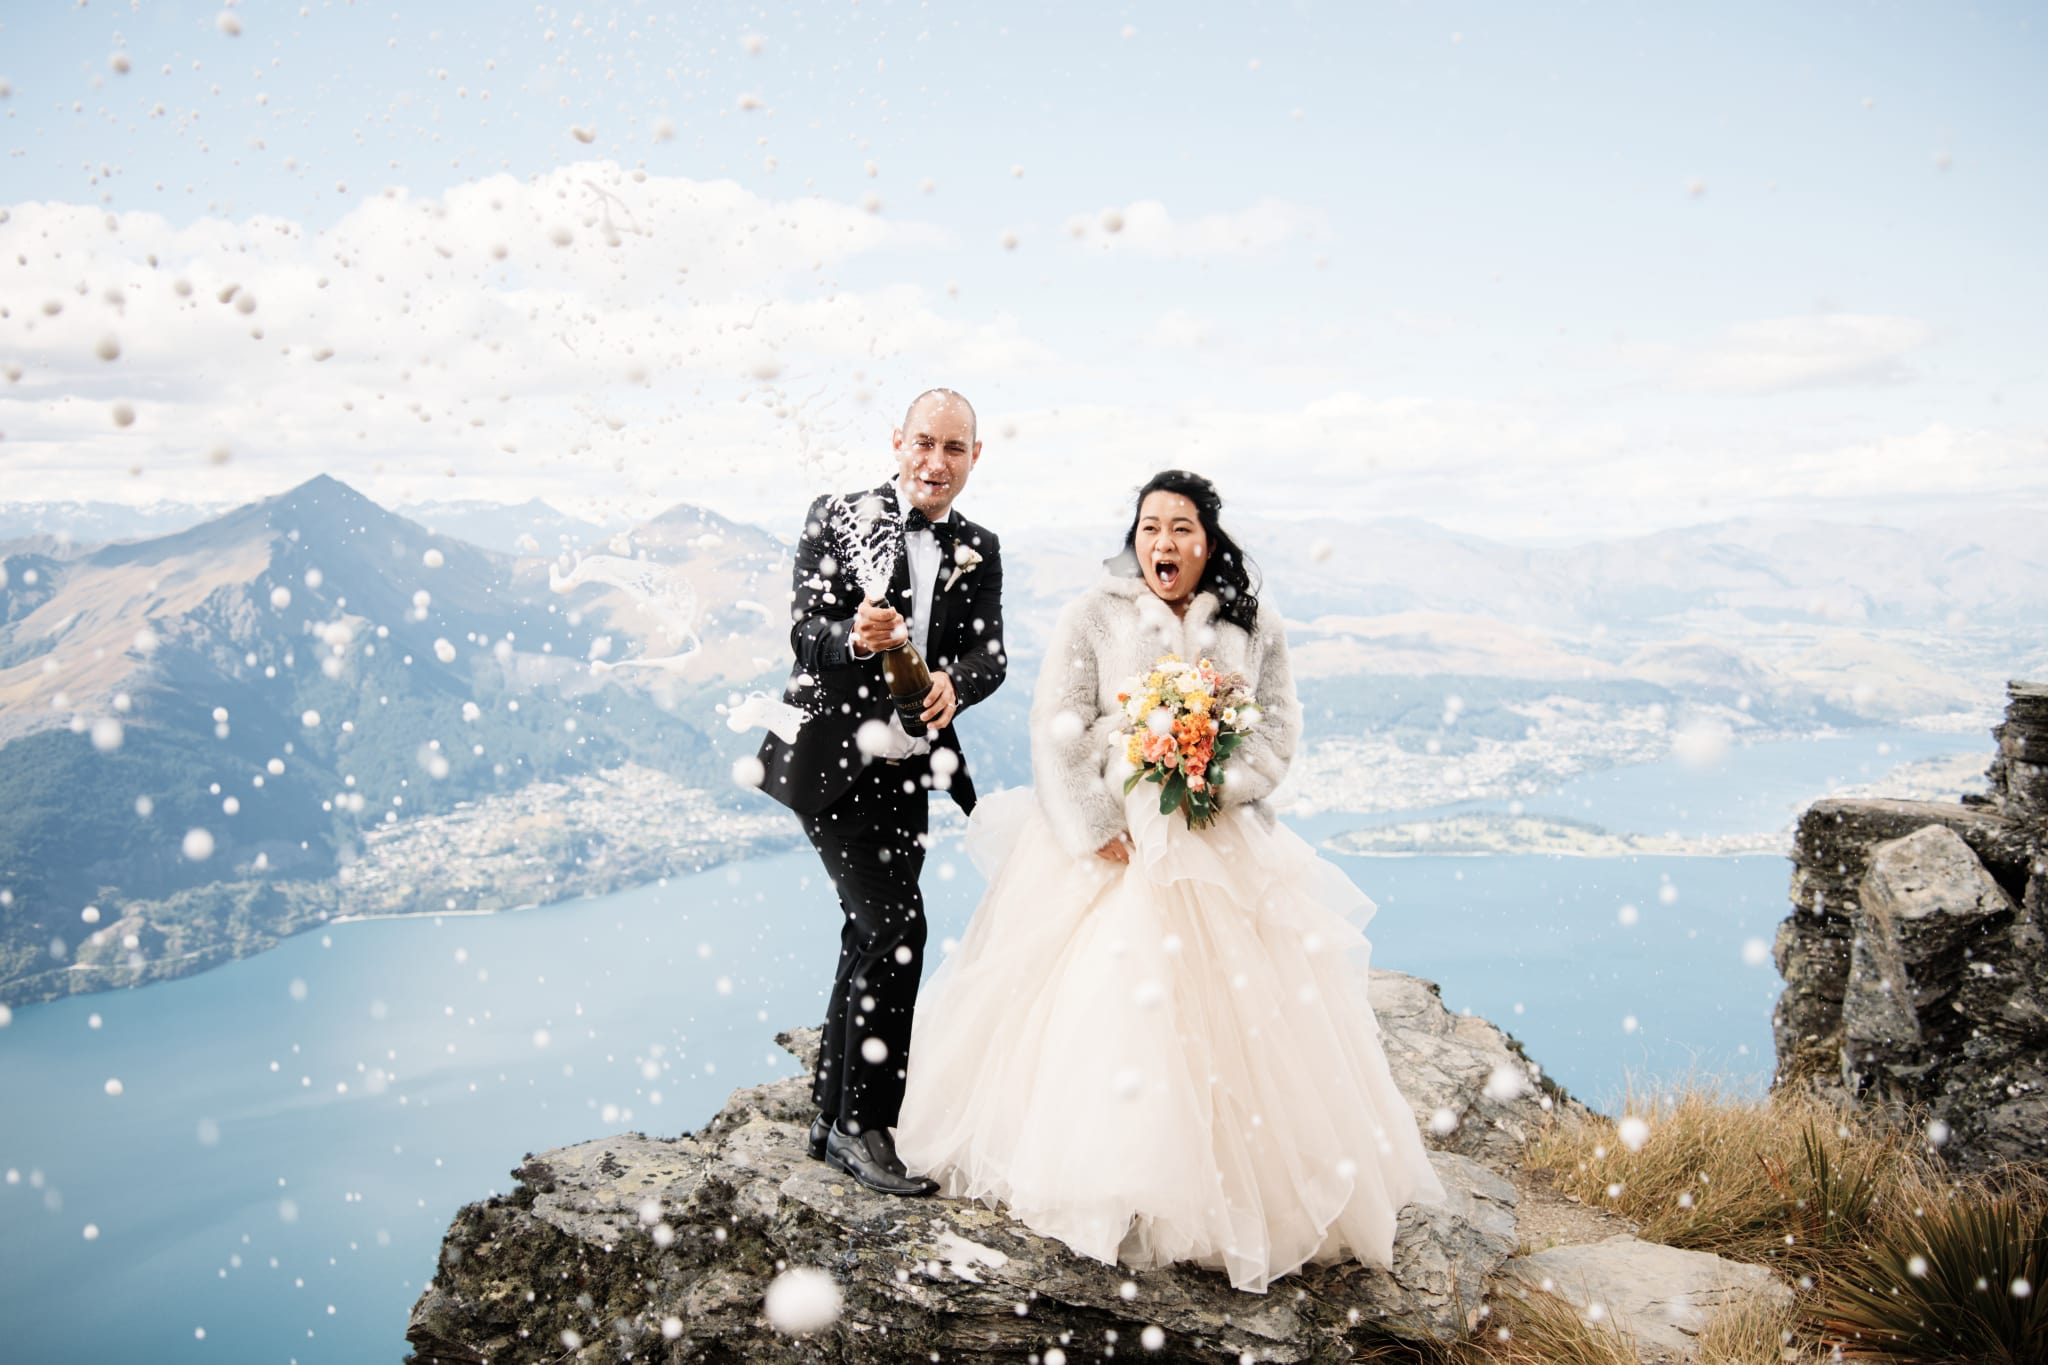 queenstown cecil peak heli wedding elopement photographer nz new zealand